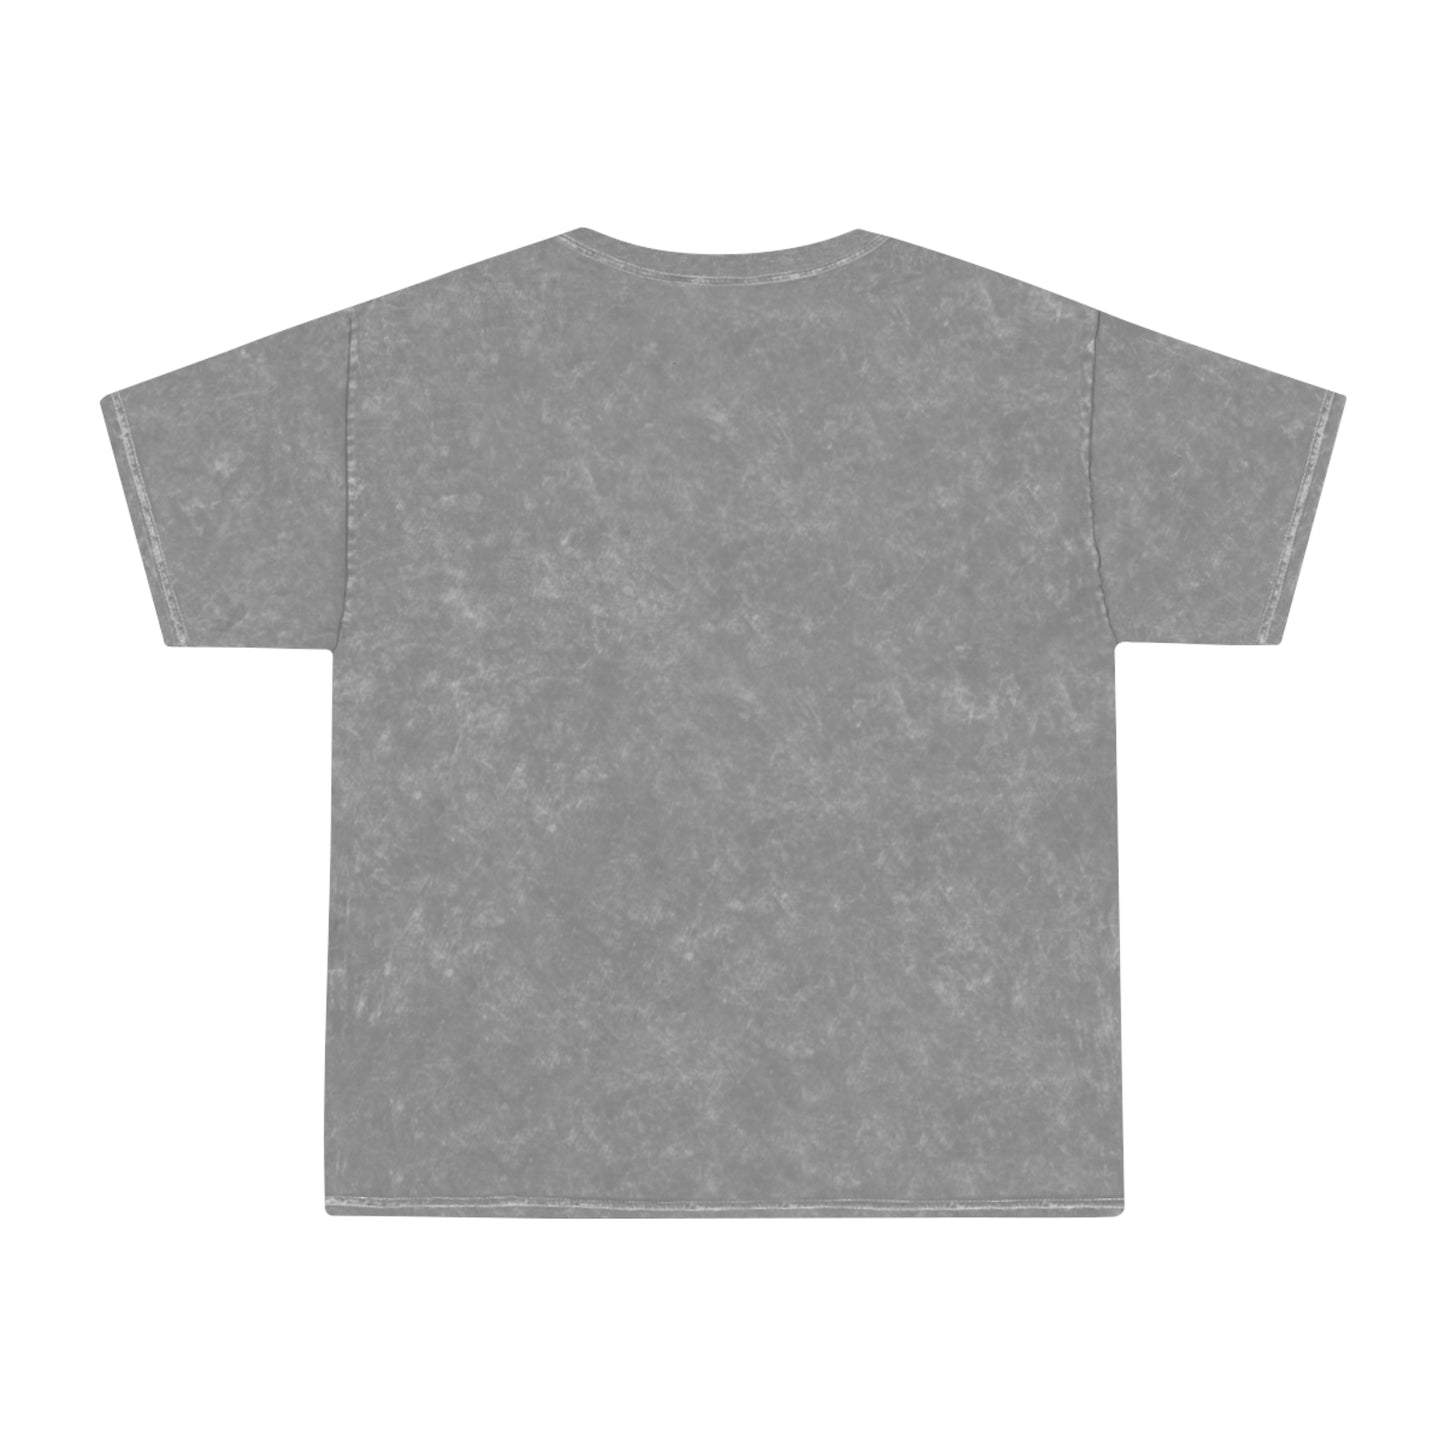 Plant Milkweed Unisex Mineral Wash T-Shirt